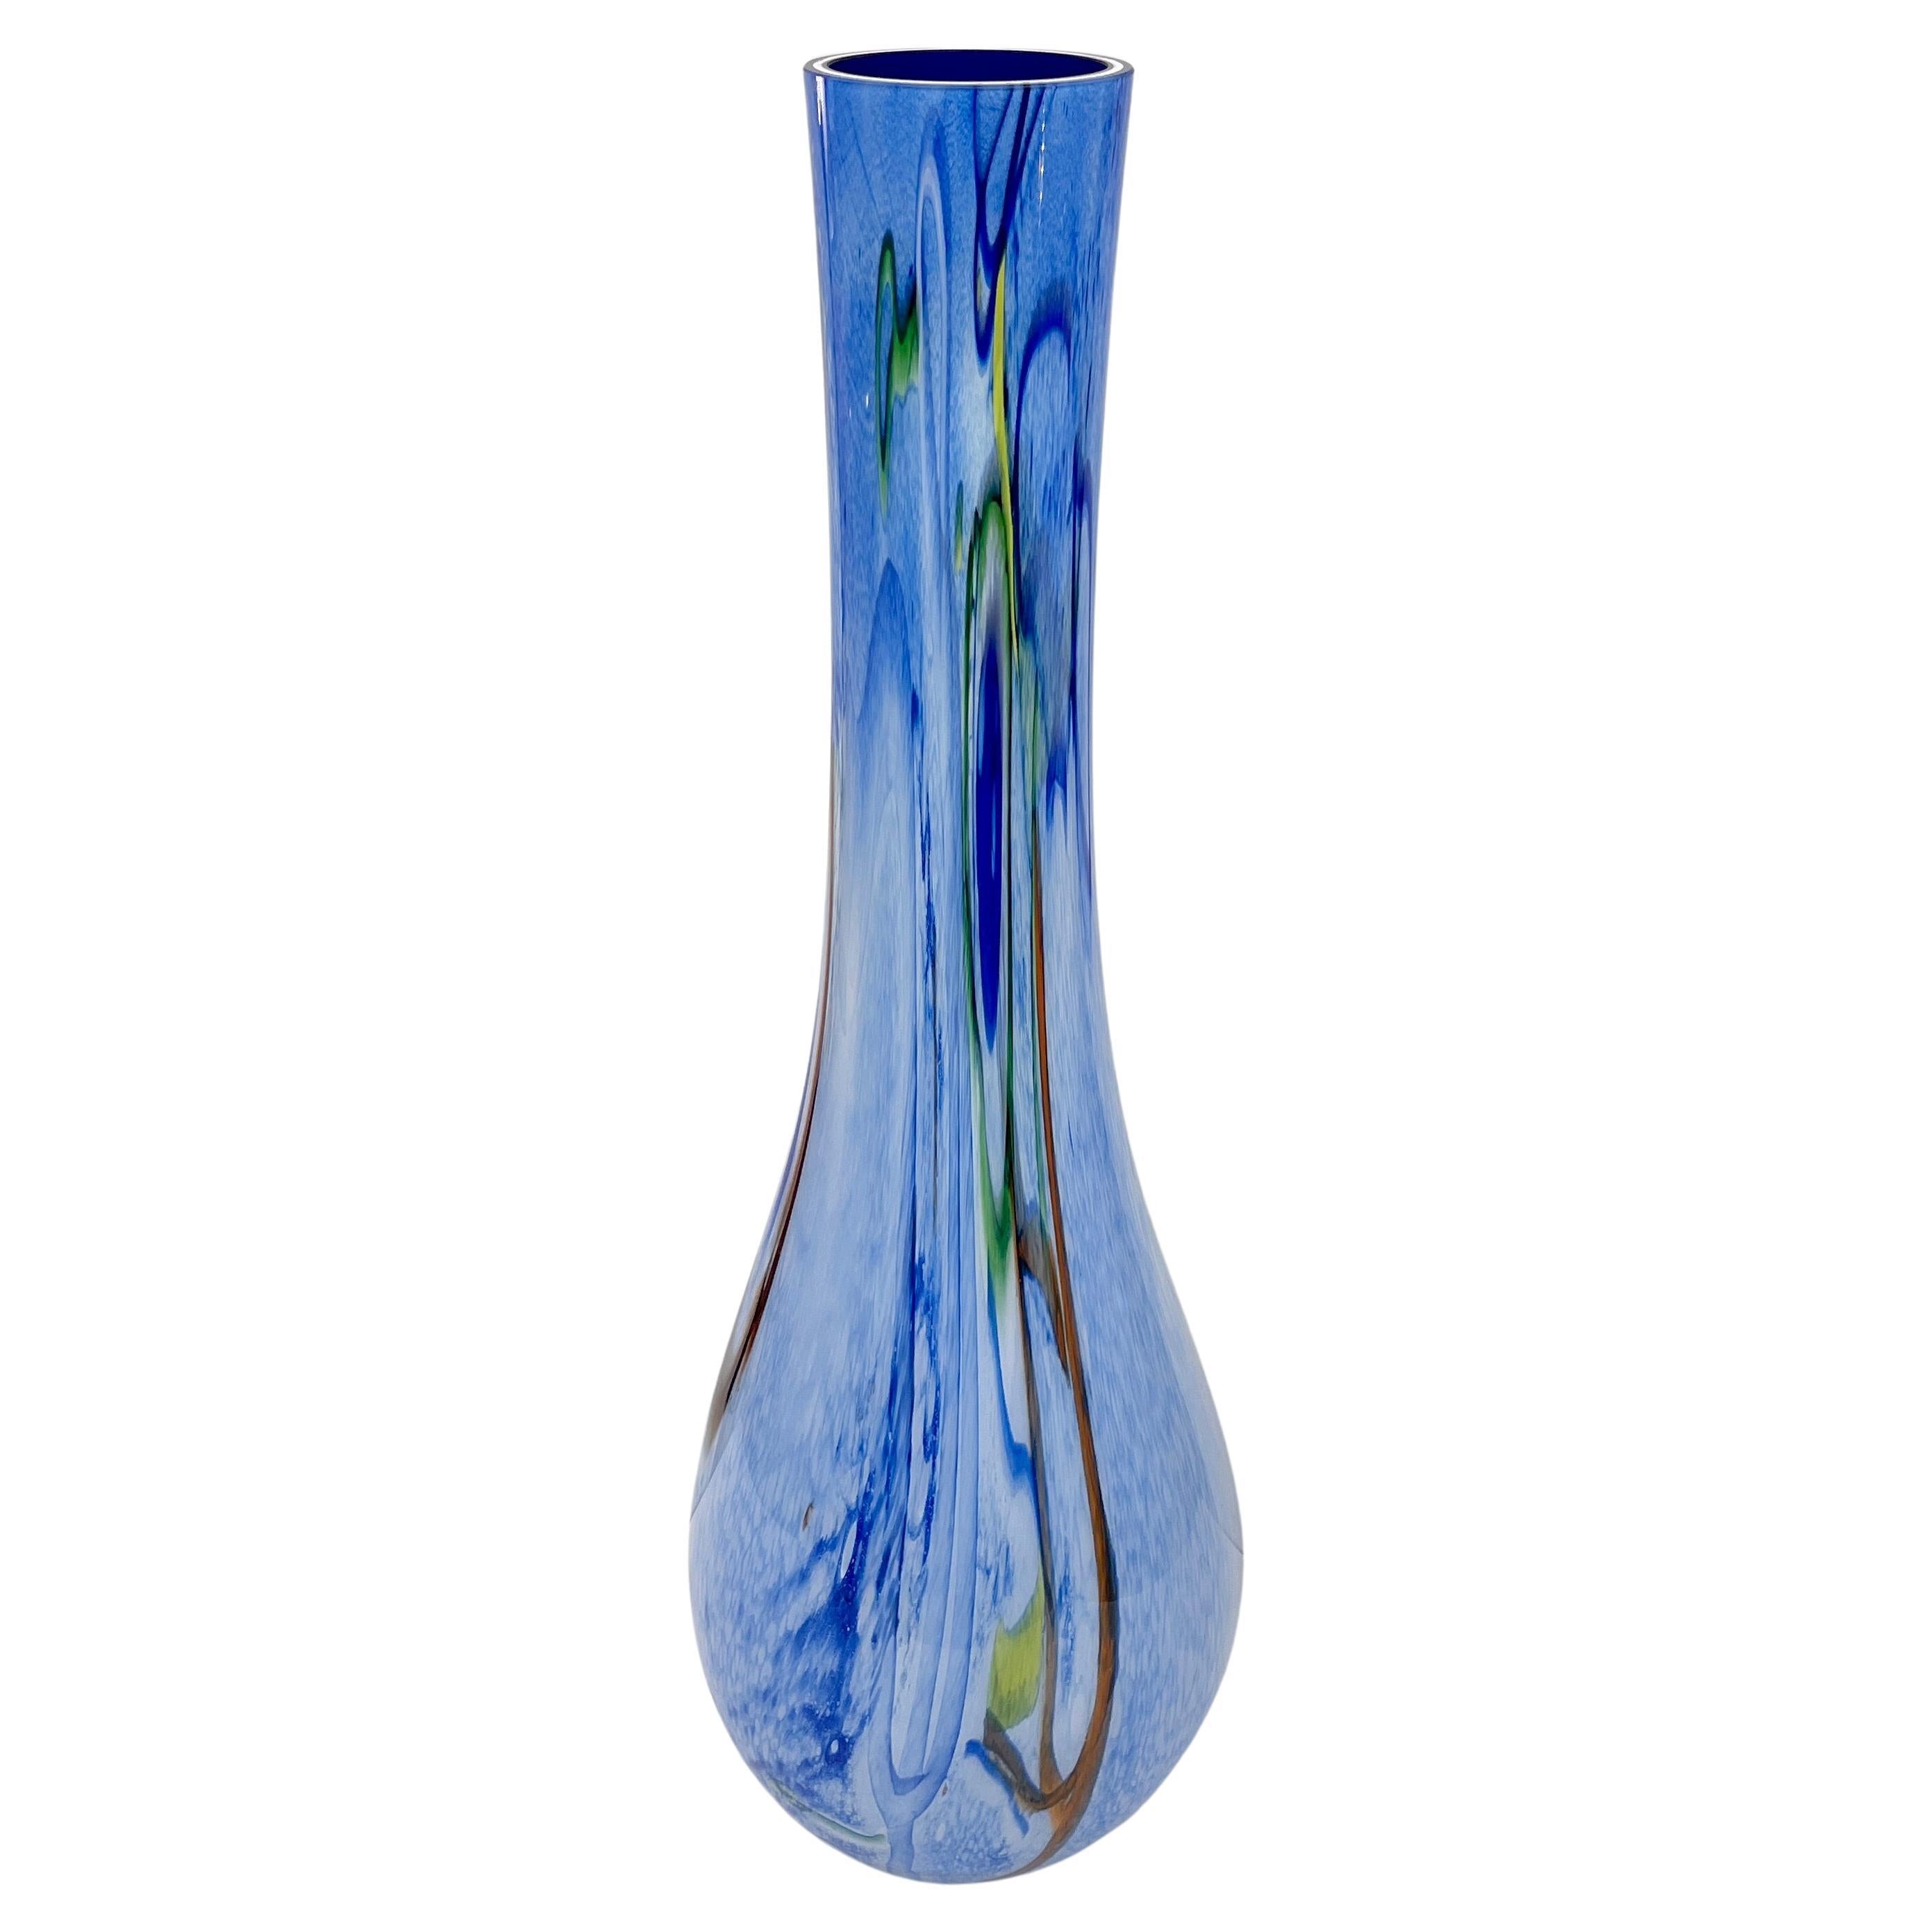 Monumental vase en verre de Murano en bleu, blanc, jaune, vert et orange